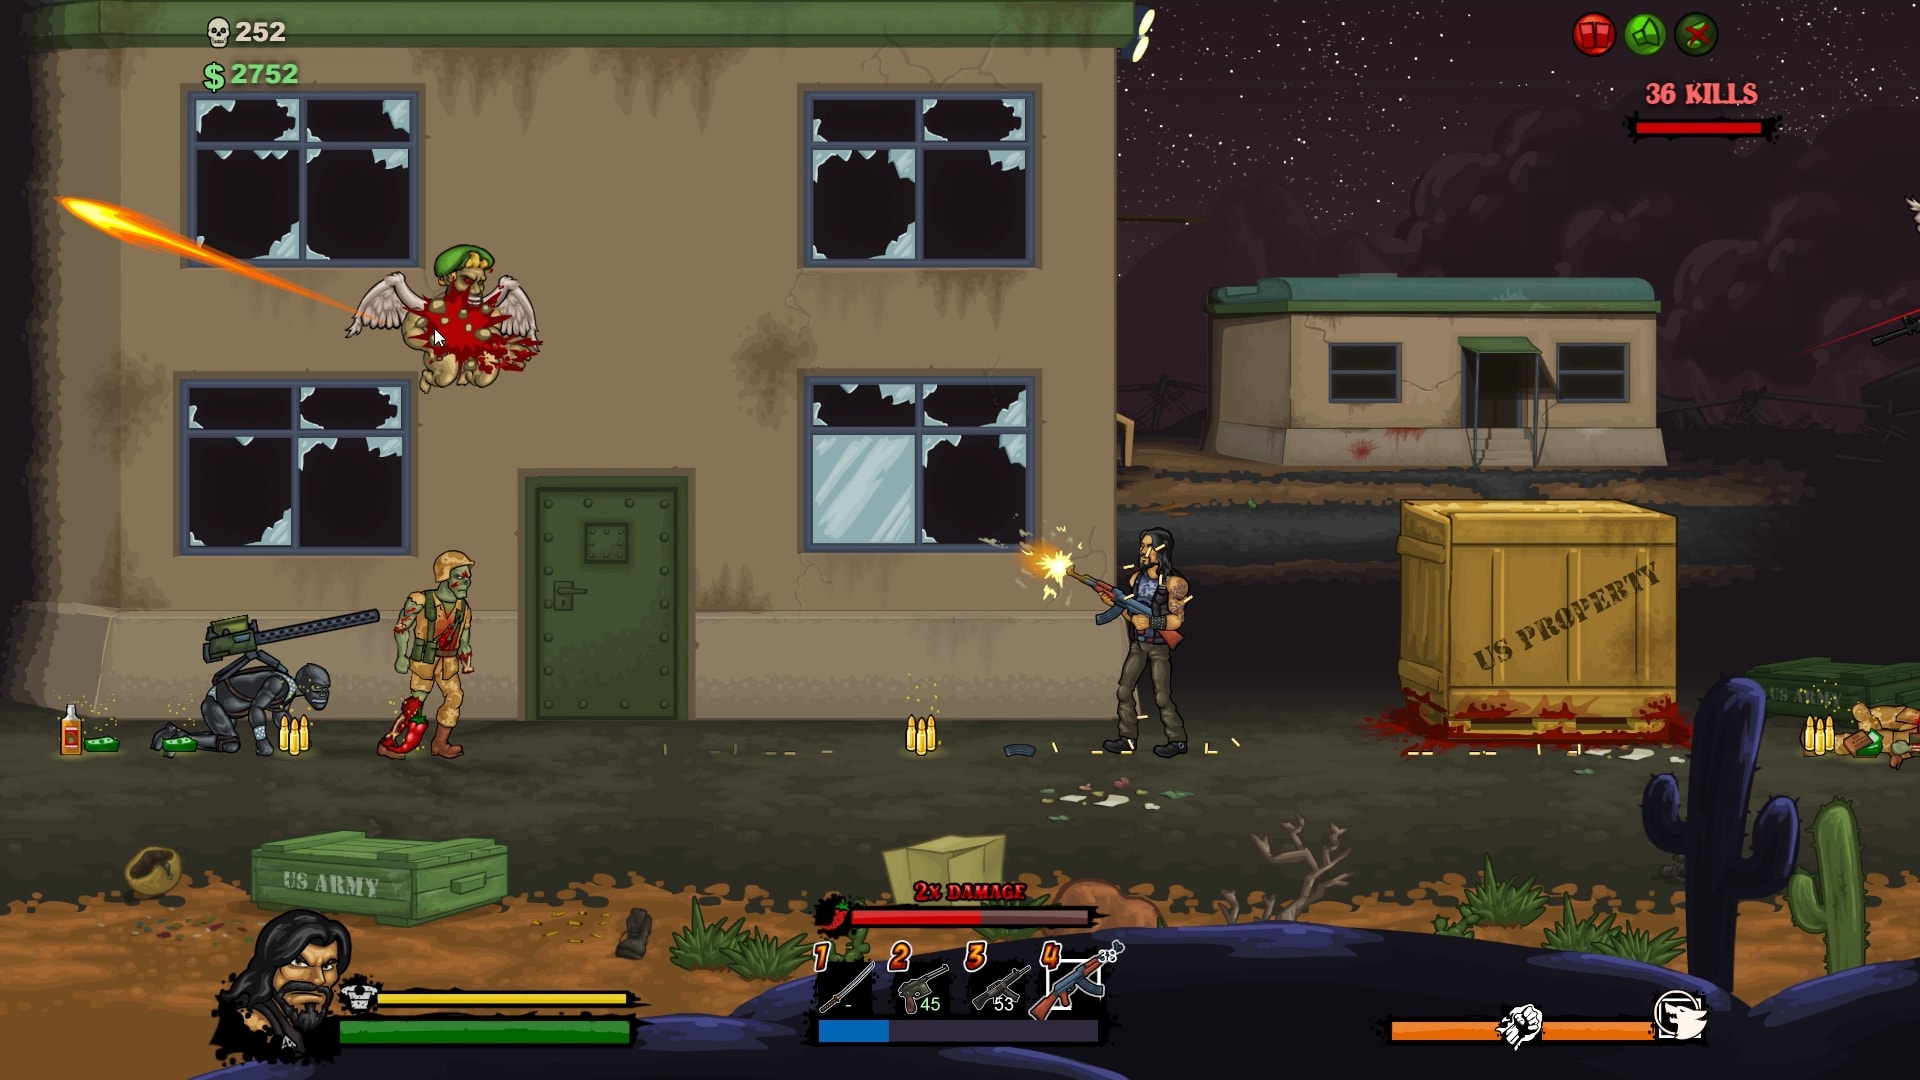 植物大战僵尸2:有的能爆炸有的血很厚，坚果植物有大作用 - 植物大战僵尸2-小米游戏中心